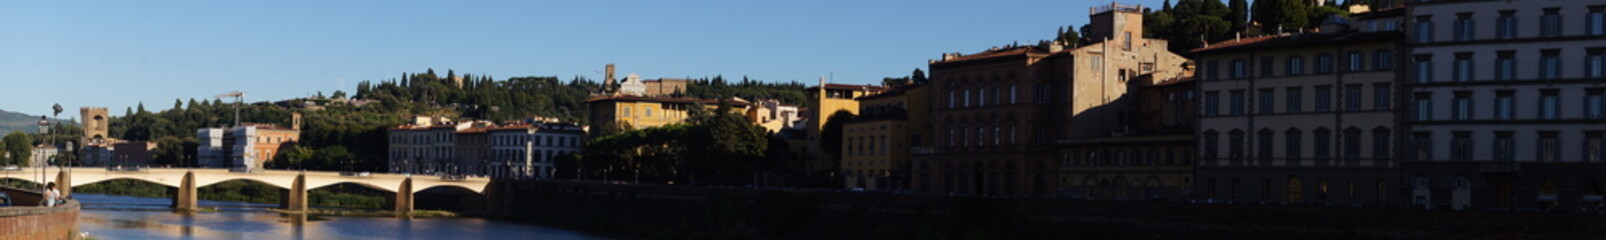 Pont sur l'Arno à Florence